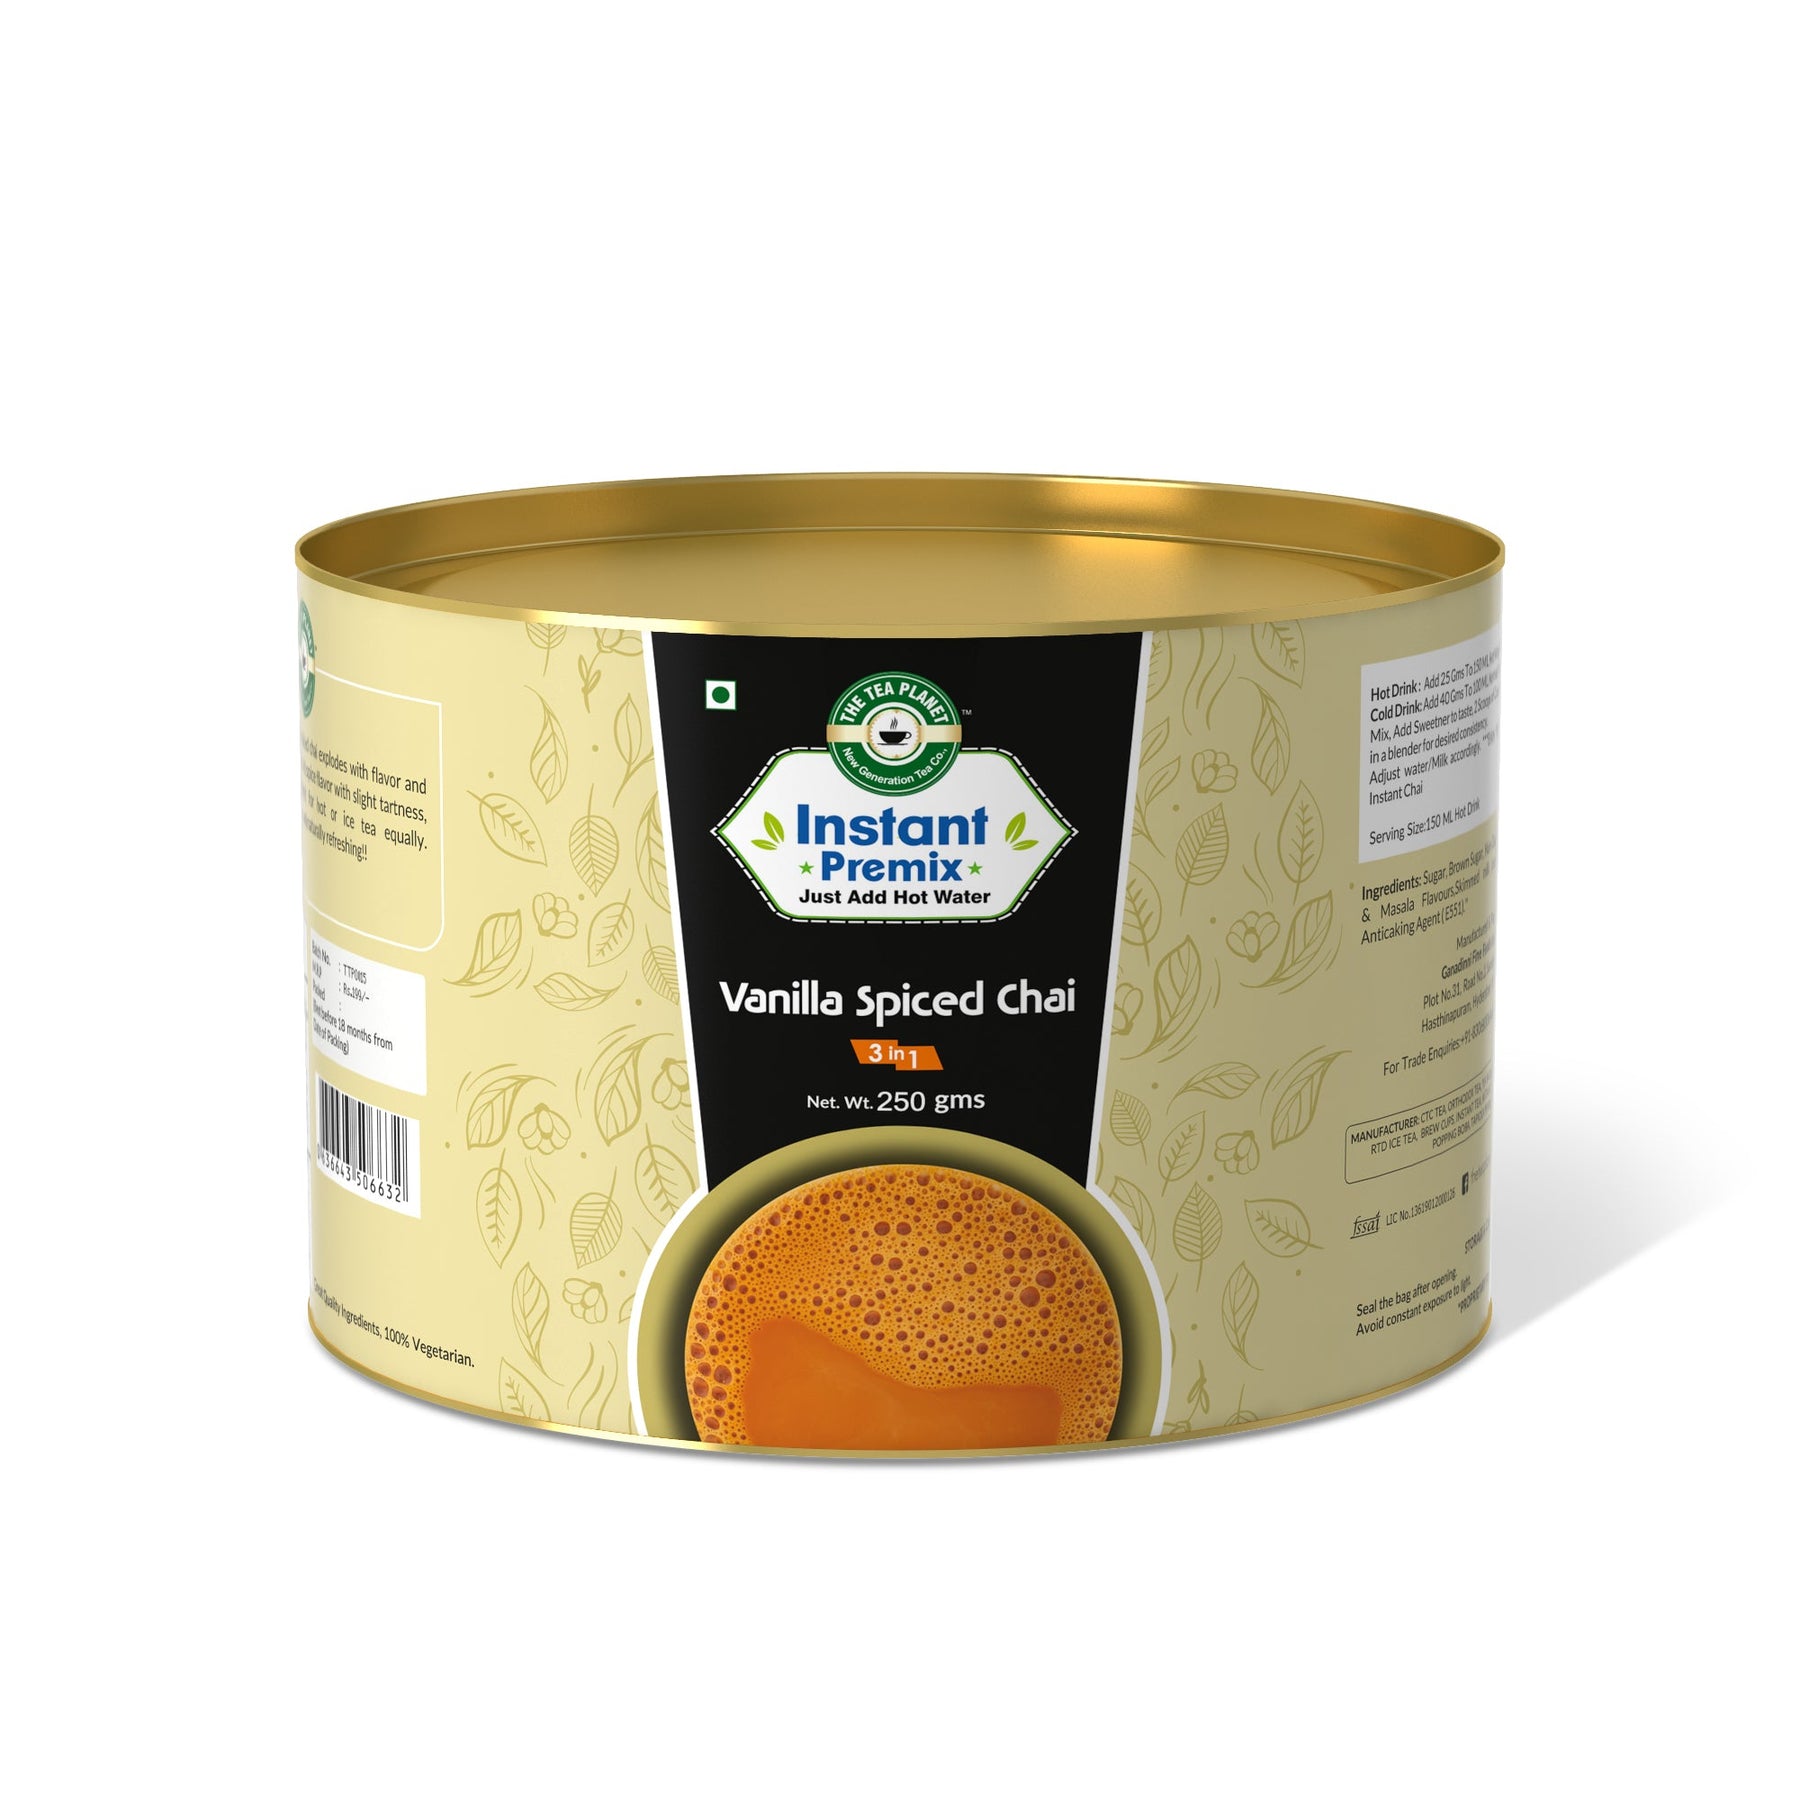 Vanilla Spiced Chai Premix (3 in 1) - 250 gms